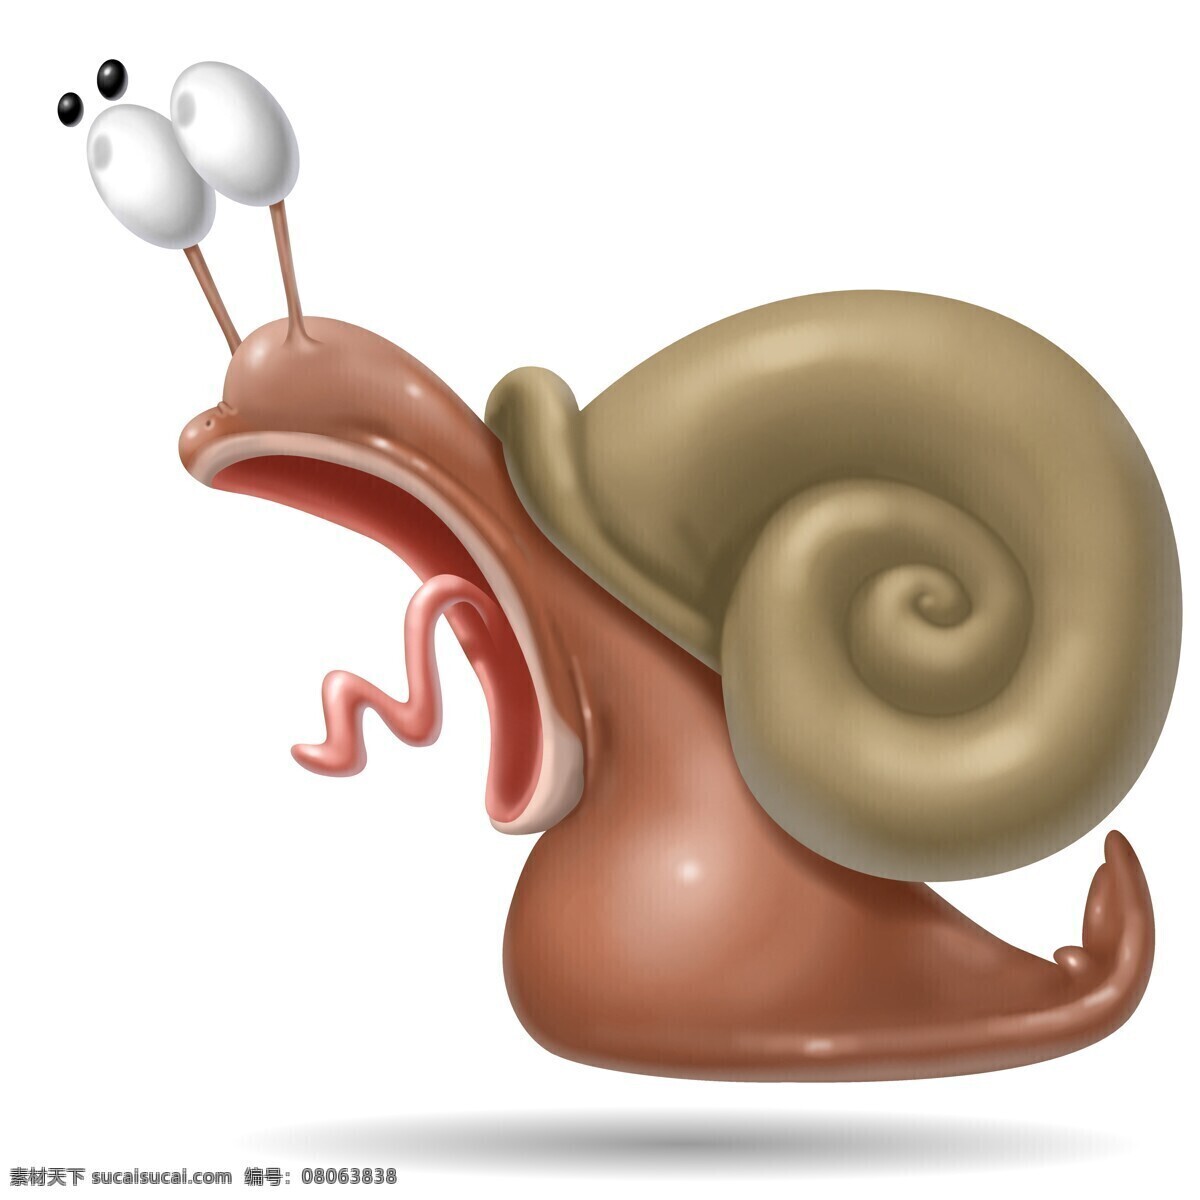 3d 蜗牛 插画 3d蜗牛插画 做 惊讶 表情 动物 3d卡通动物 陆地动物 生物世界 卡通动物